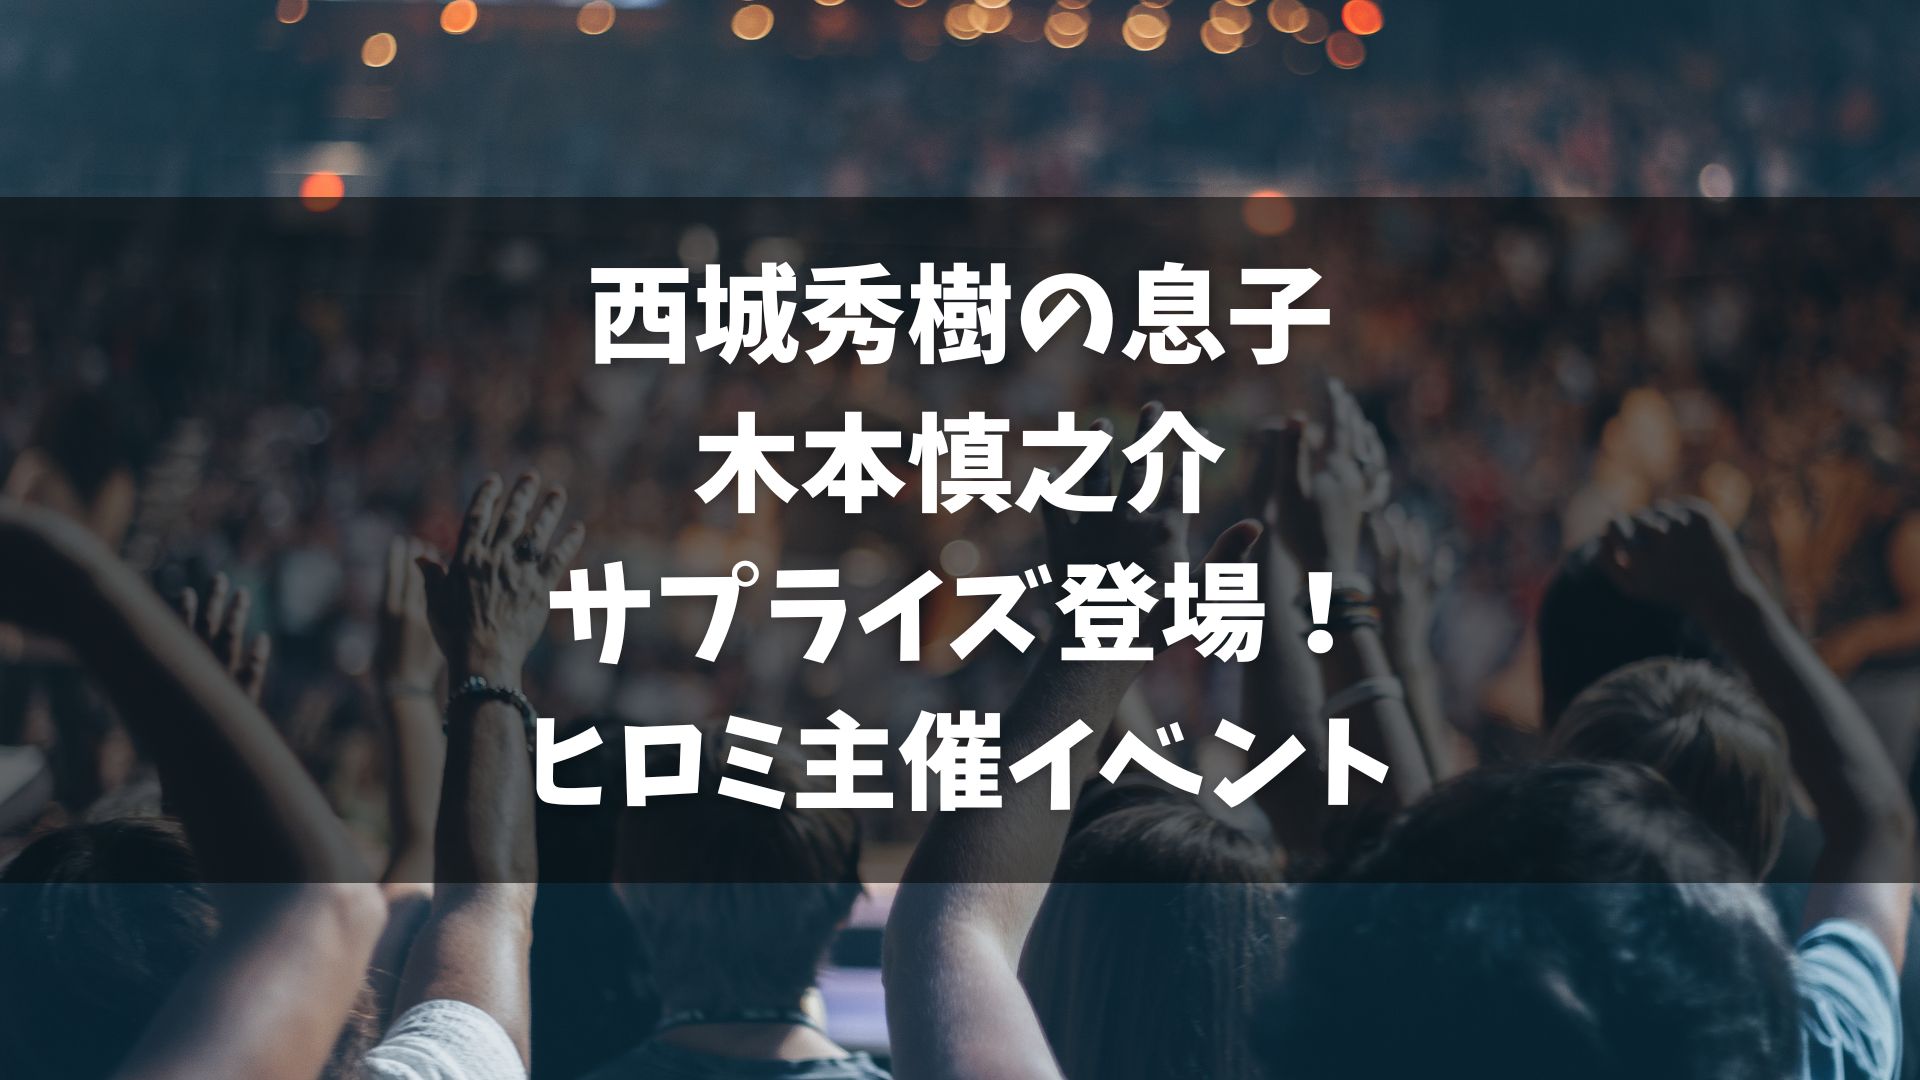 「八王子ダマシイ Festival＆Carnival 2023」は、タレントのヒロミが主催する大規模なイベントで、東京・八王子市内で盛大に開催されました。このイベントは、地元出身の著名人が集結し、特に最終日には木梨憲武が大トリを務め、西城秀樹さんの長男、木本慎之介さんがサプライズで登場しました。木本さんの近々のデビューも発表され、観客からは大きな期待と興奮が感じられました。